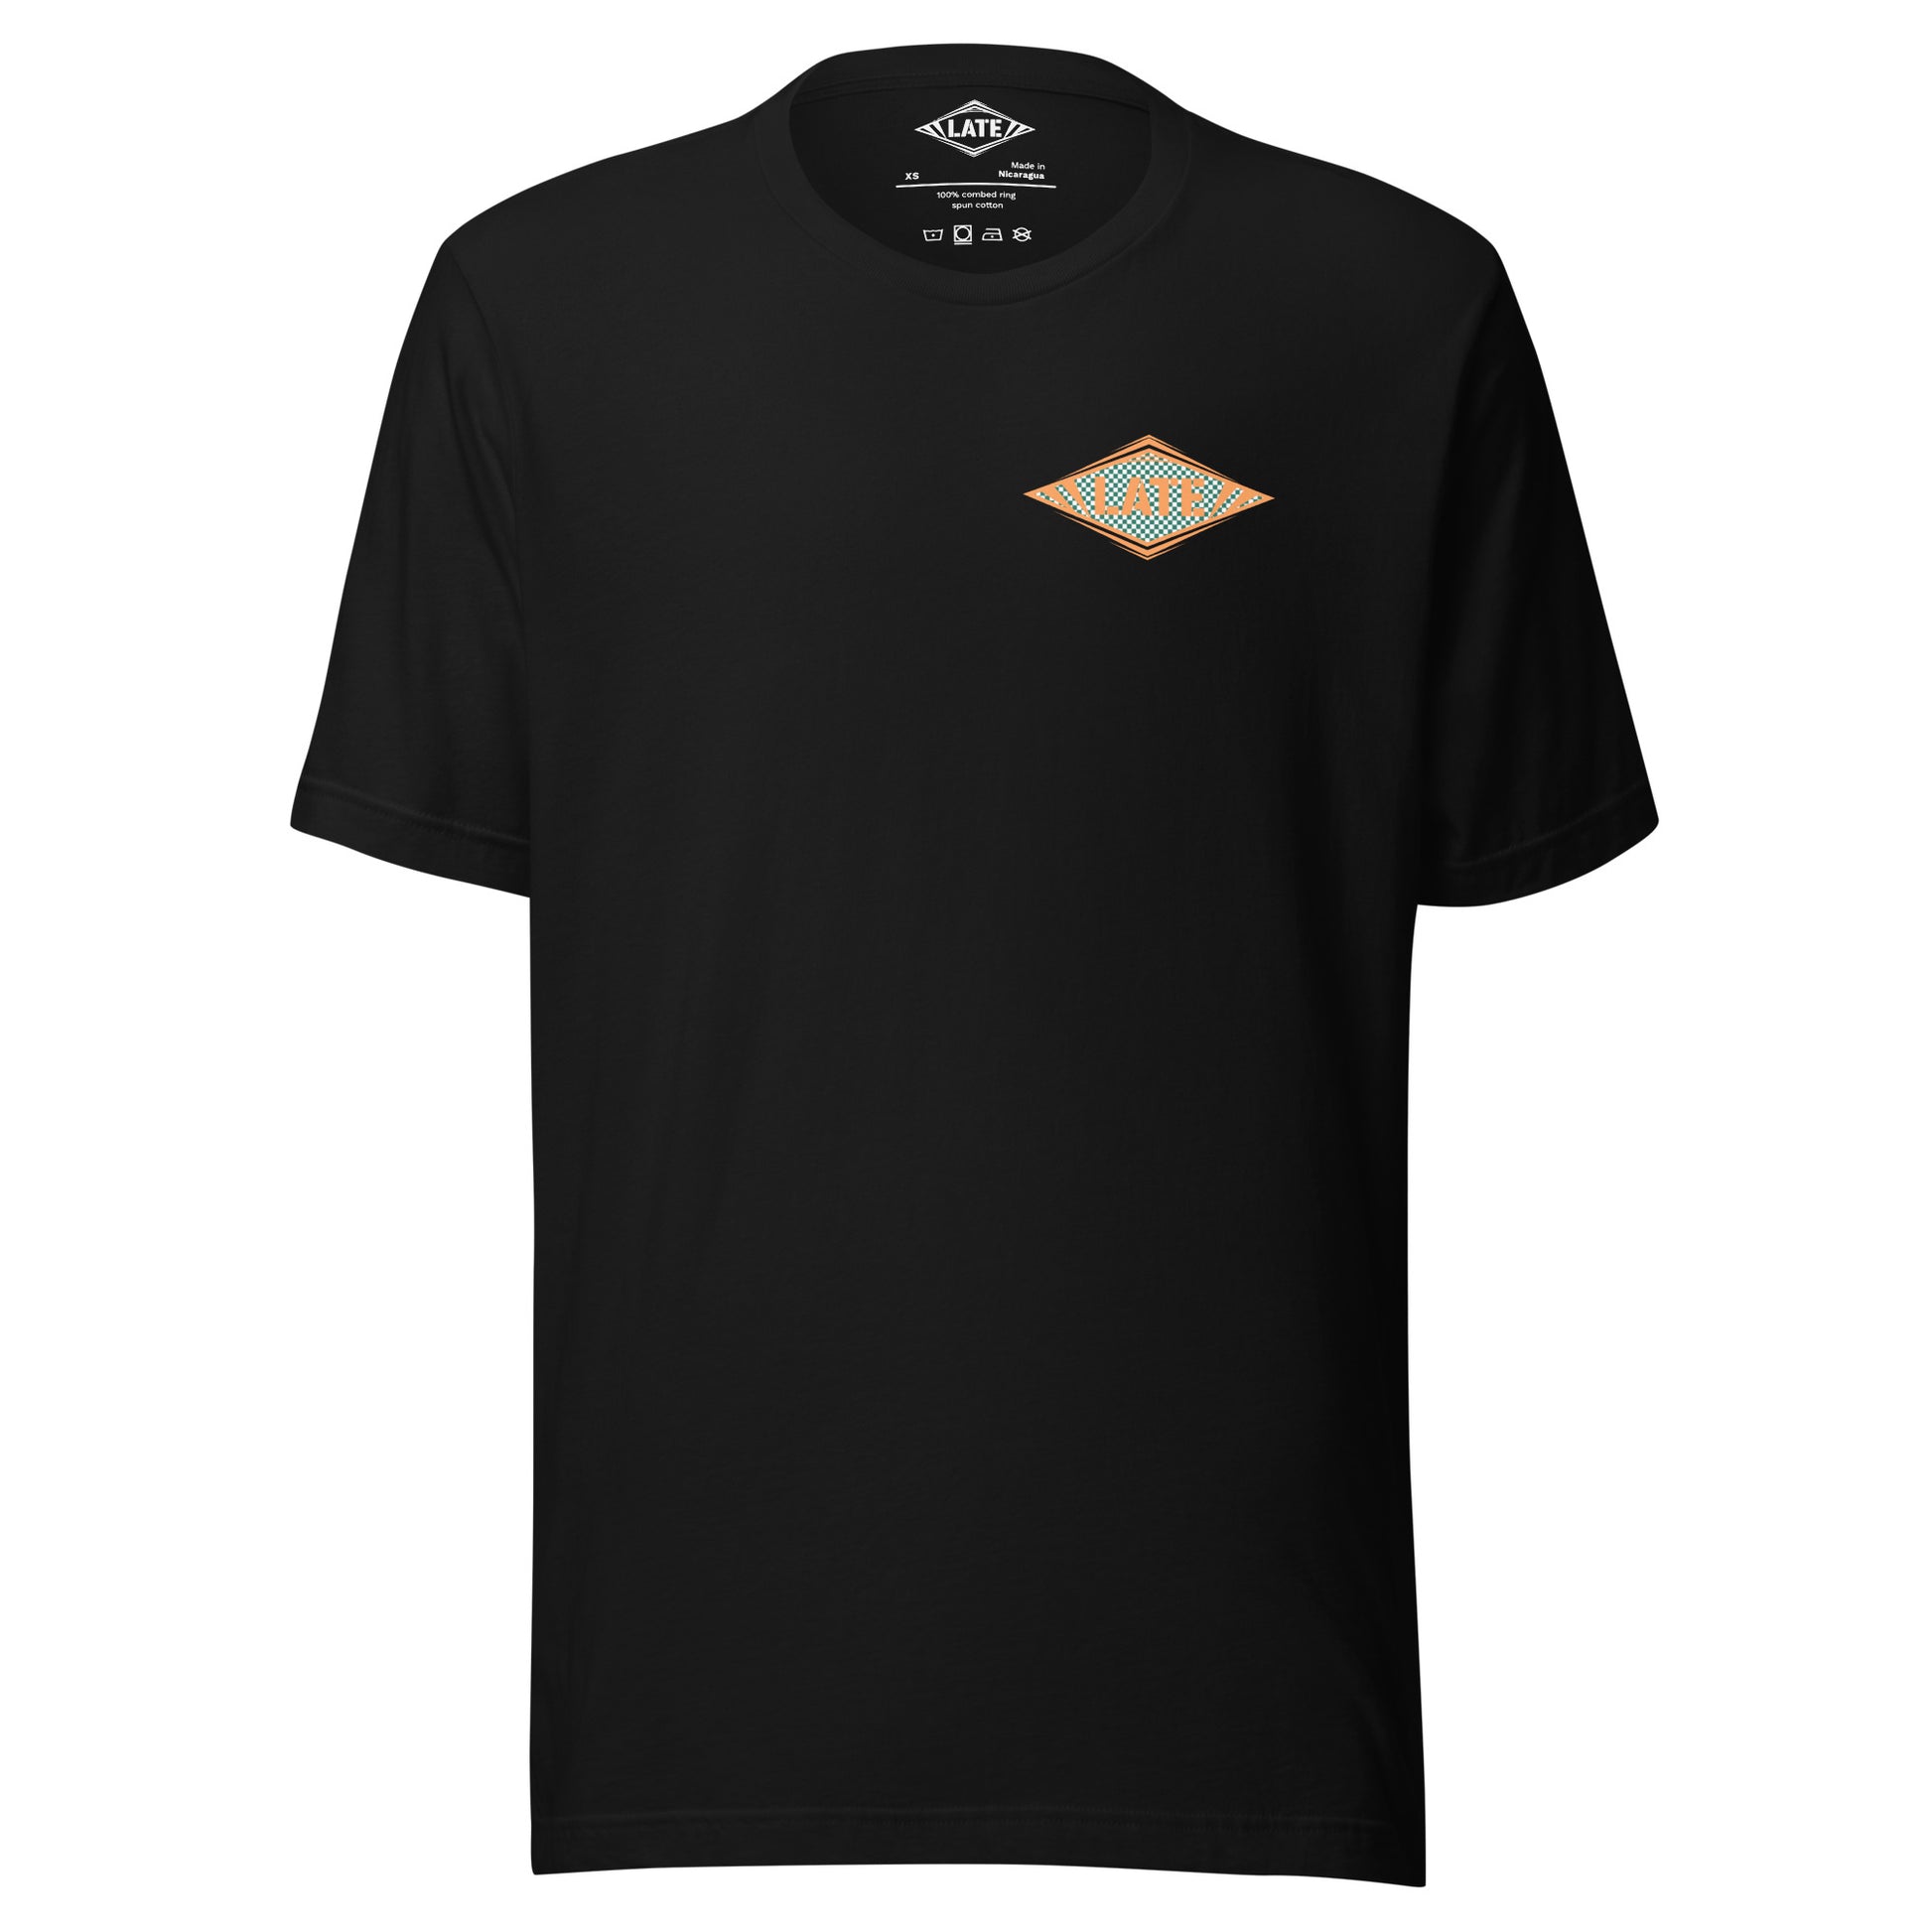 T-Shirt Shred It skateboard style Vans logo Late à carreaux. T-Shirt unisex de face couleur noir